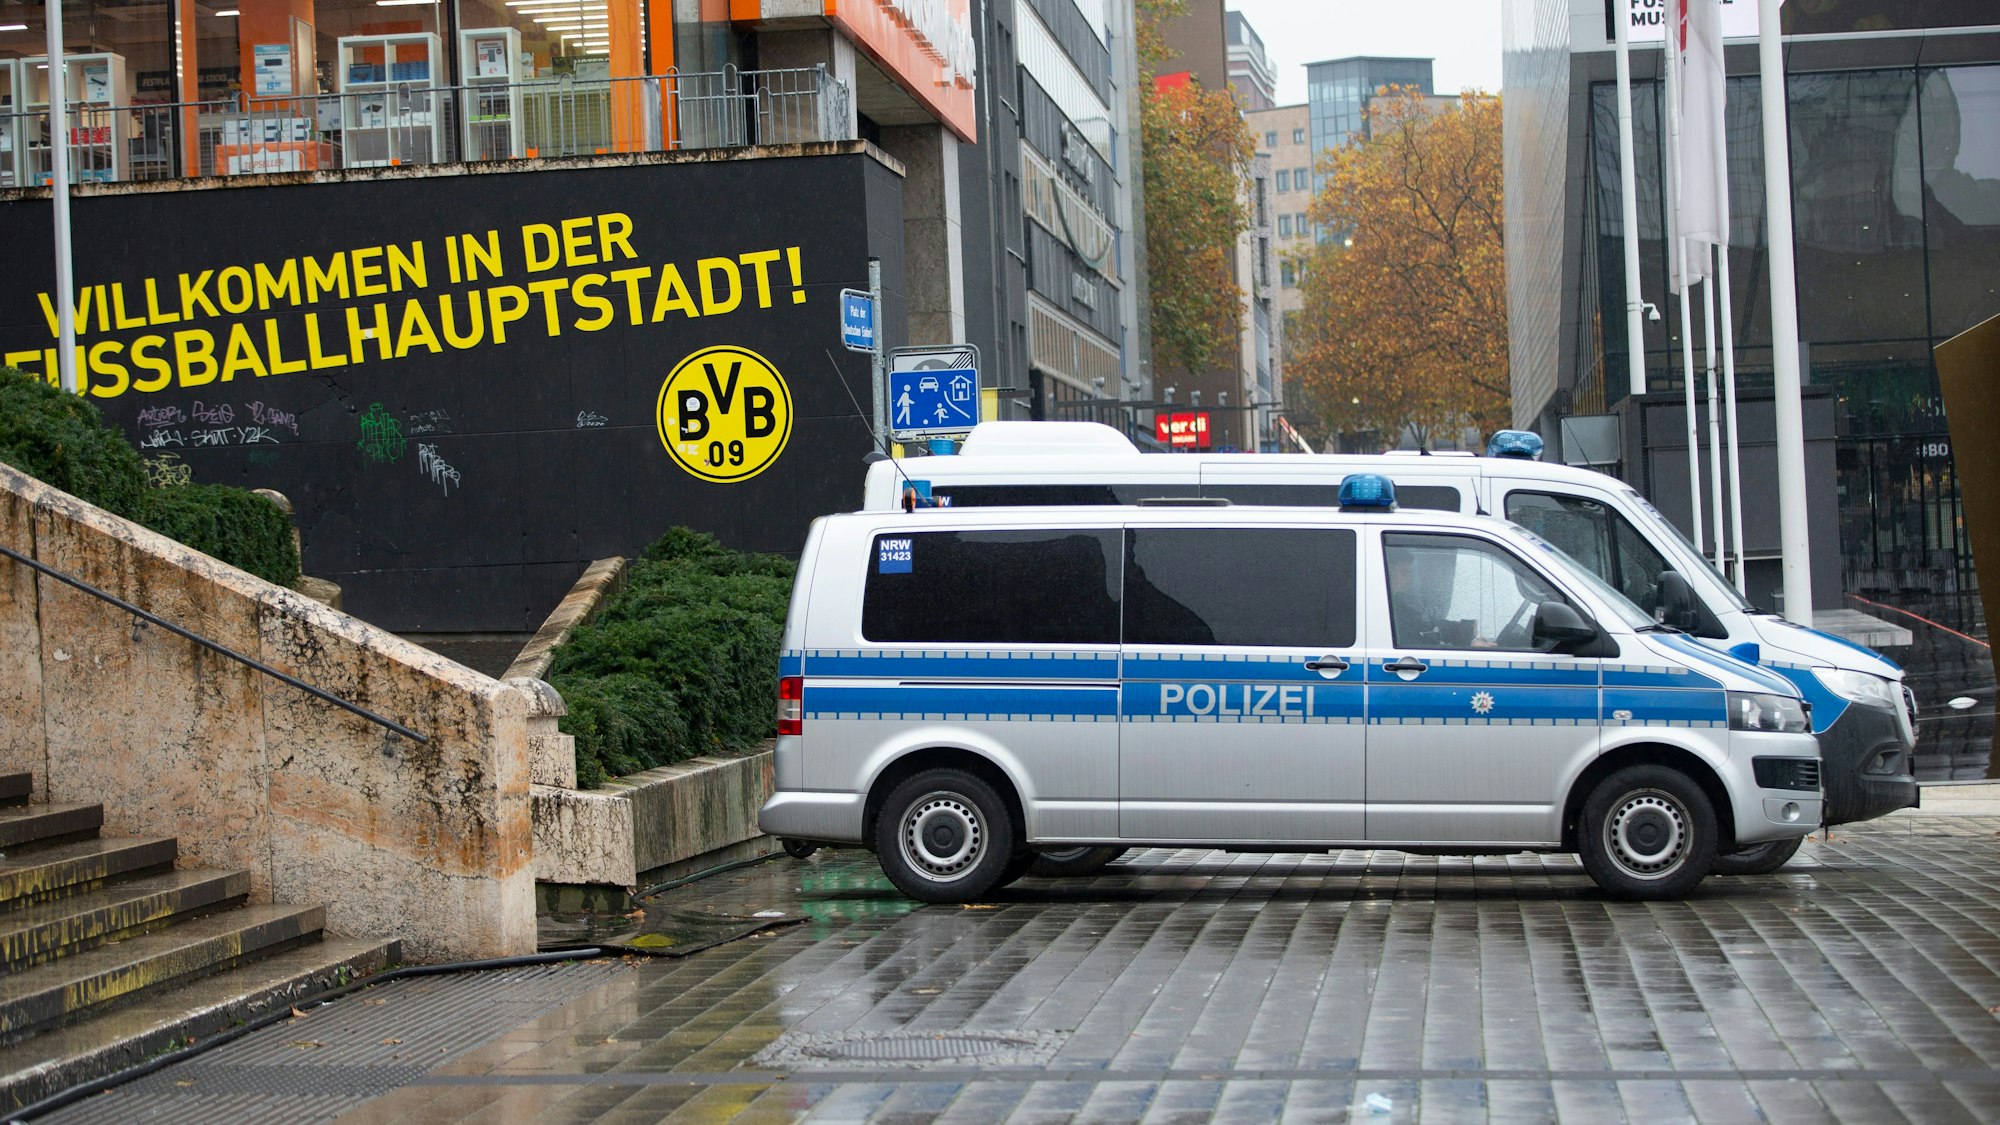 Polizeiautos stehen am Dortmunder Hauptbahnhof. Auf einem Schild ist „Willkommen in der Fußballhauptstadt Dortmund“ zu lesen.